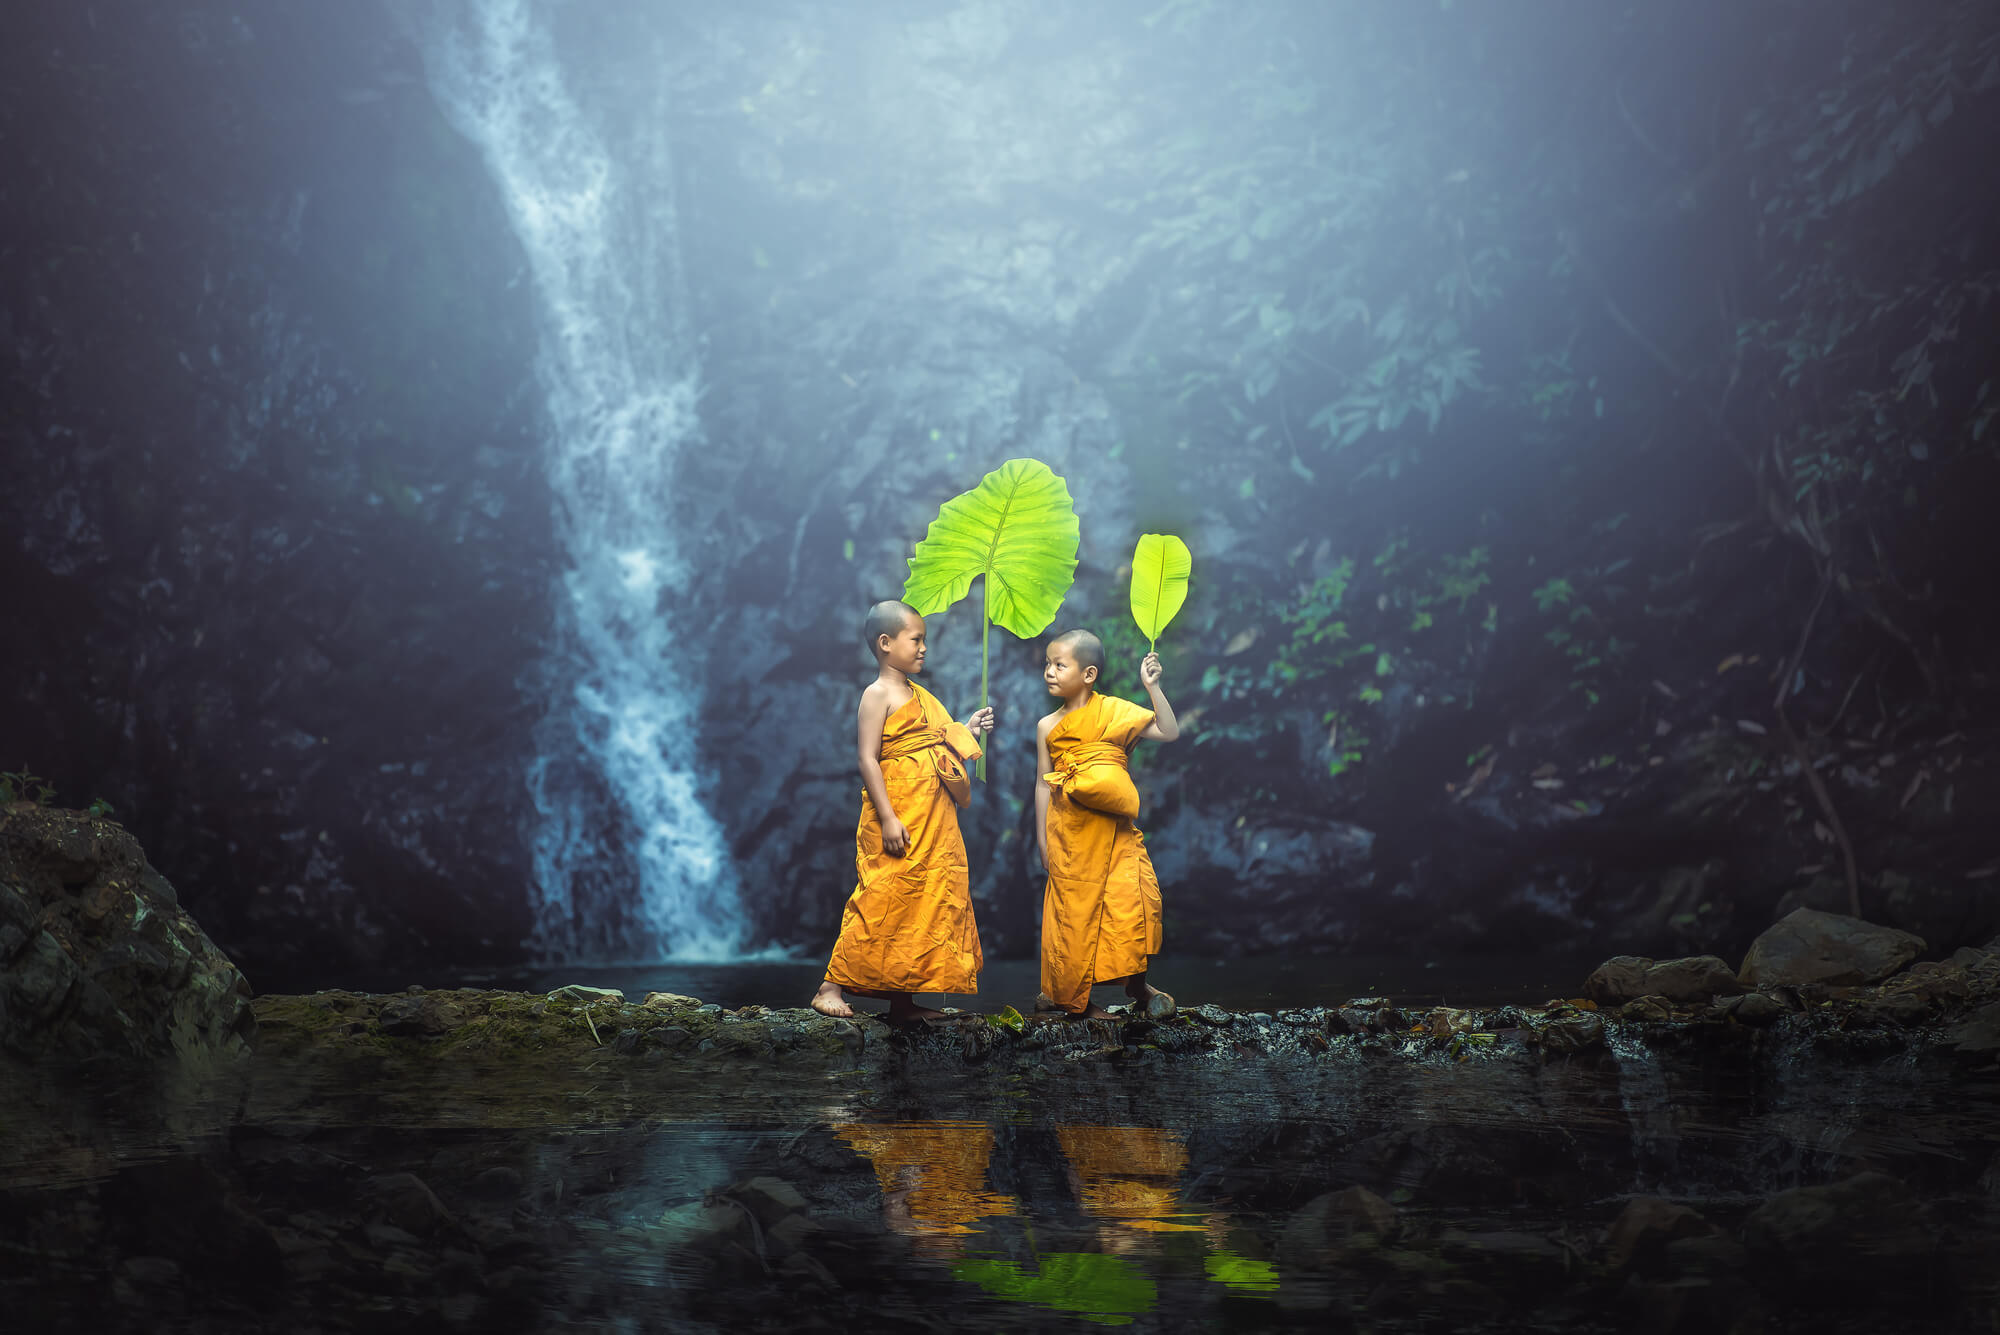 Mjanma-mnich